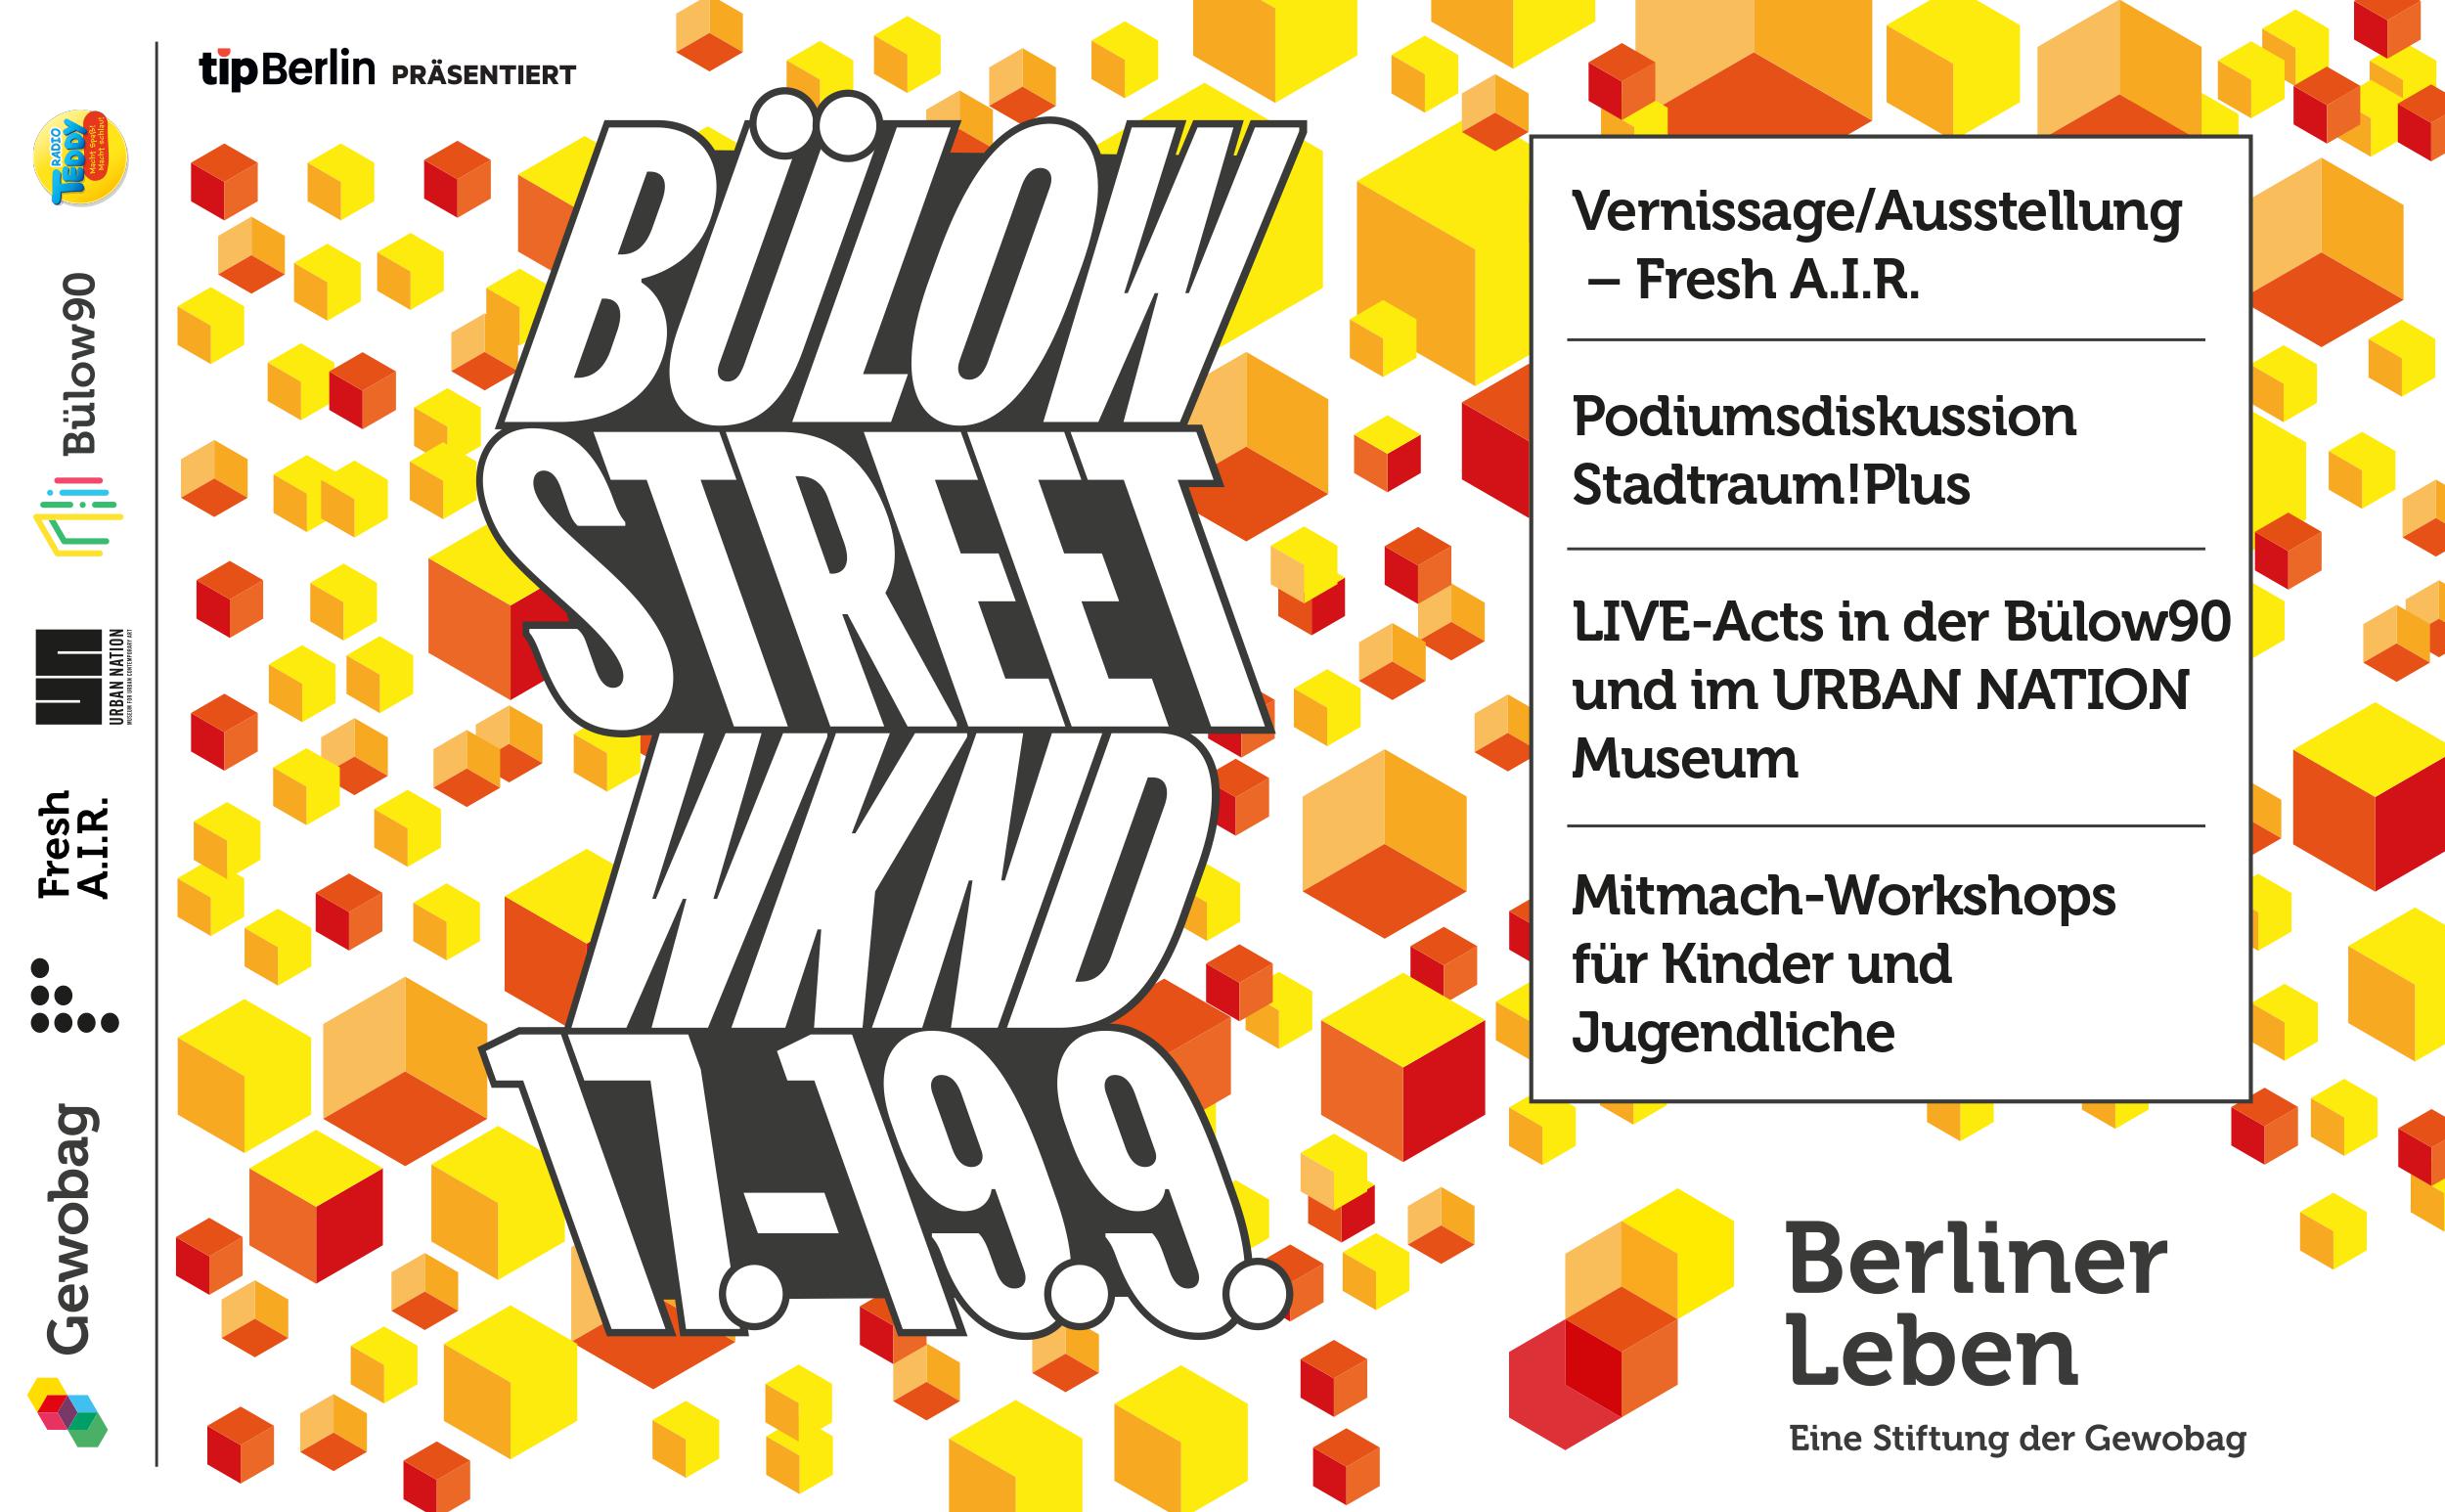 Das Bülow Street Weekend findet vom 17. - 19. September statt. Foto: Stiftung Berliner Leben der Gewobag 